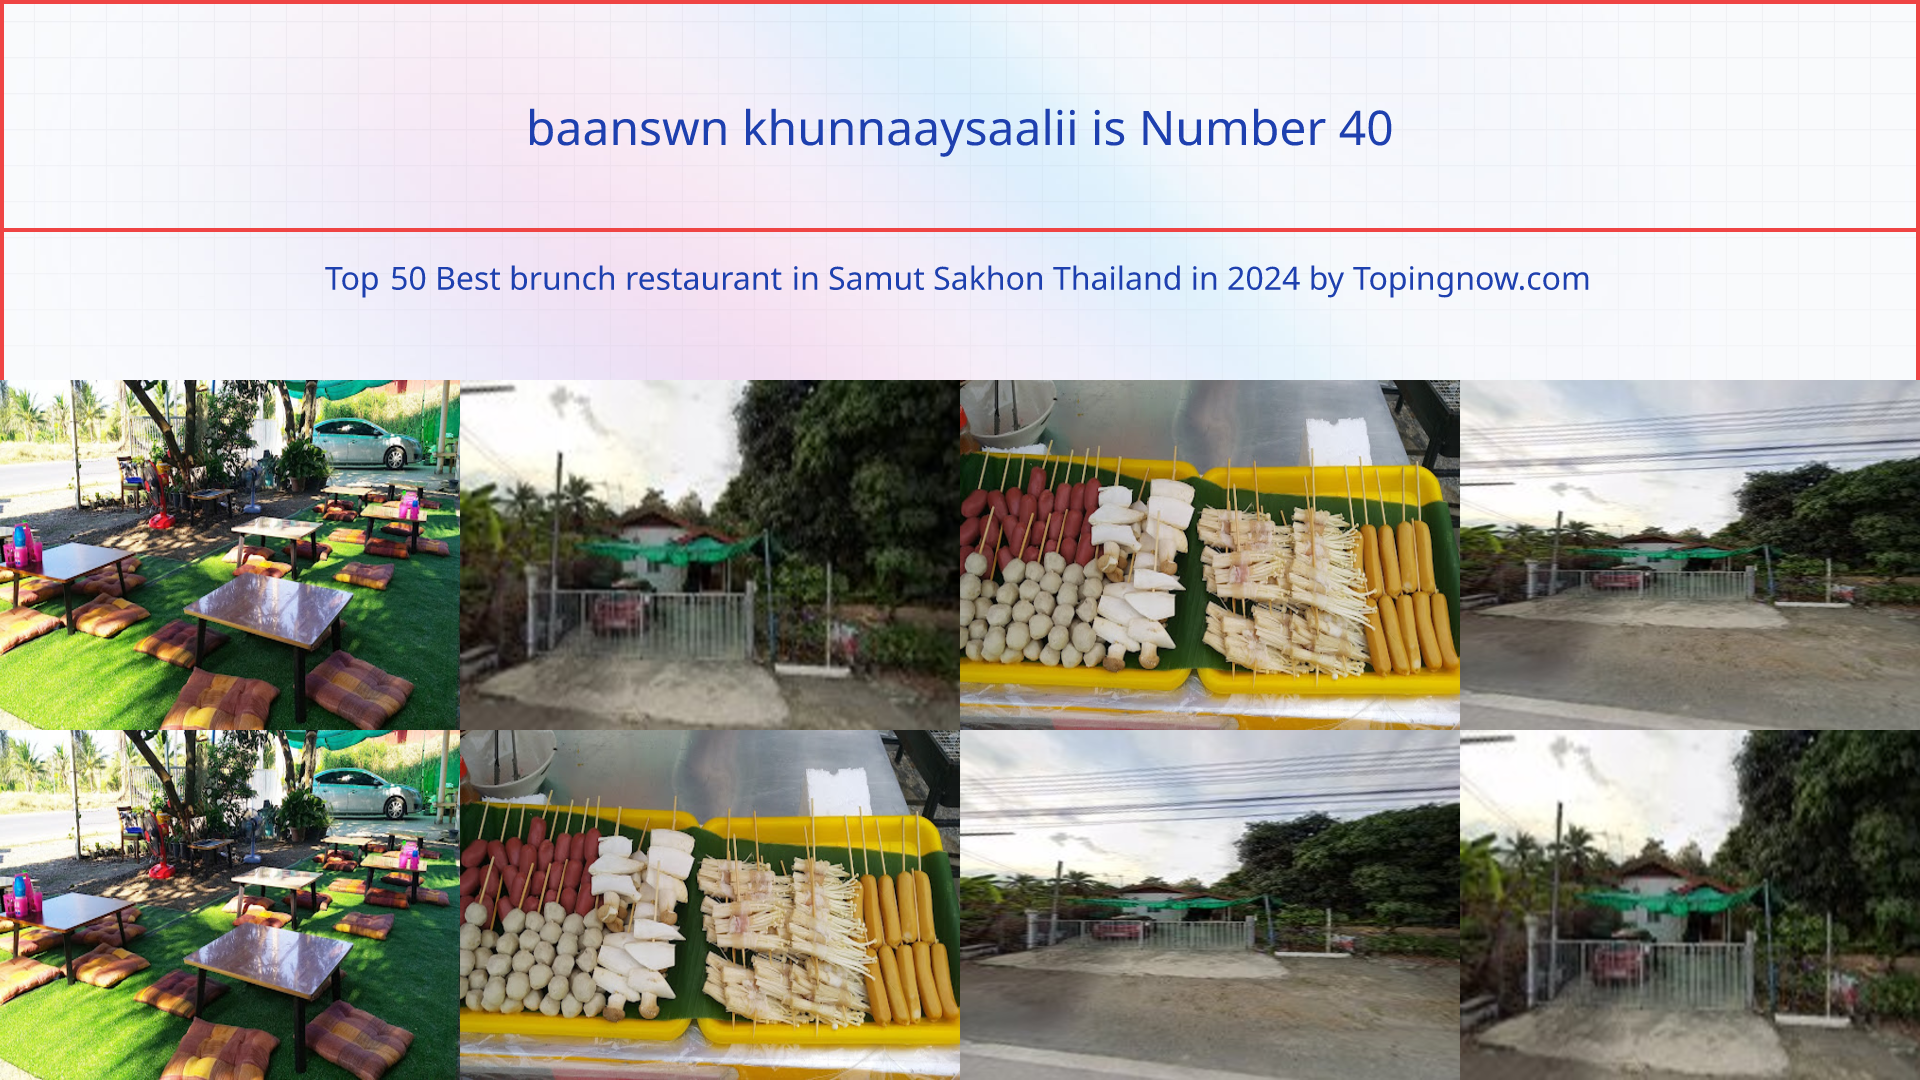 baanswn khunnaaysaalii: Top 50 Best brunch restaurant in Samut Sakhon Thailand in 2024